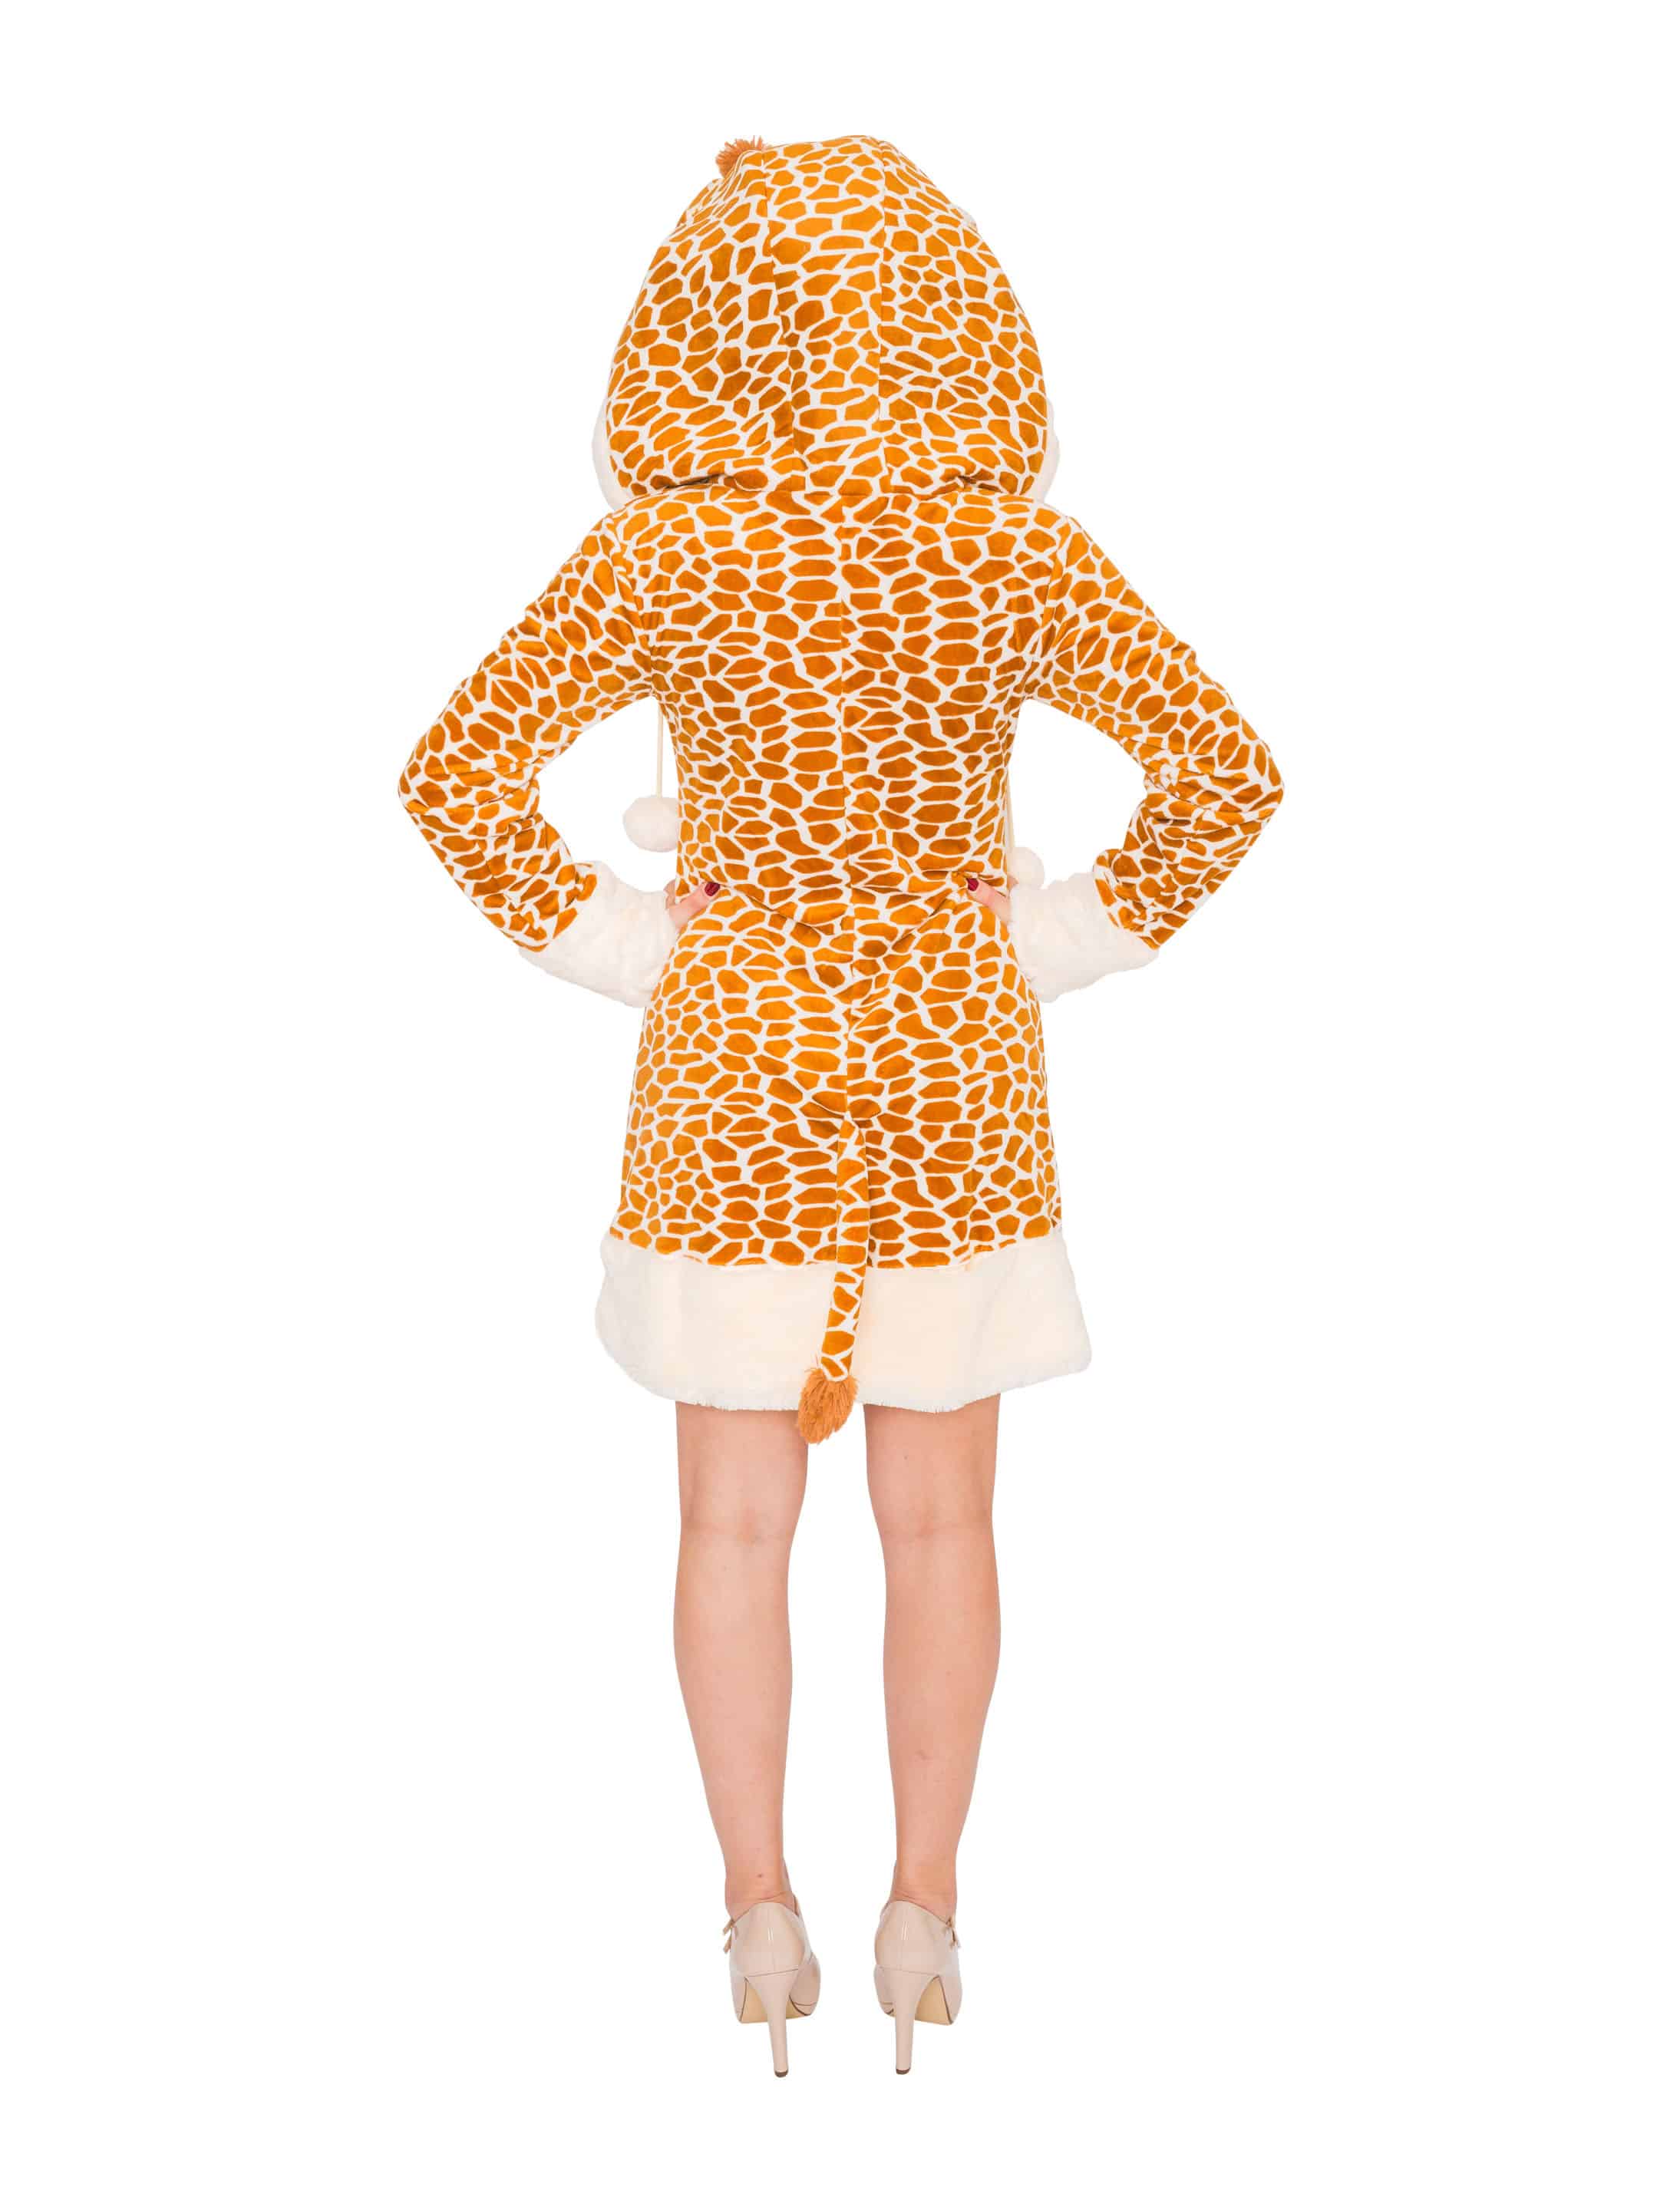 Kleid Plüsch Giraffe Damen braun 54/56